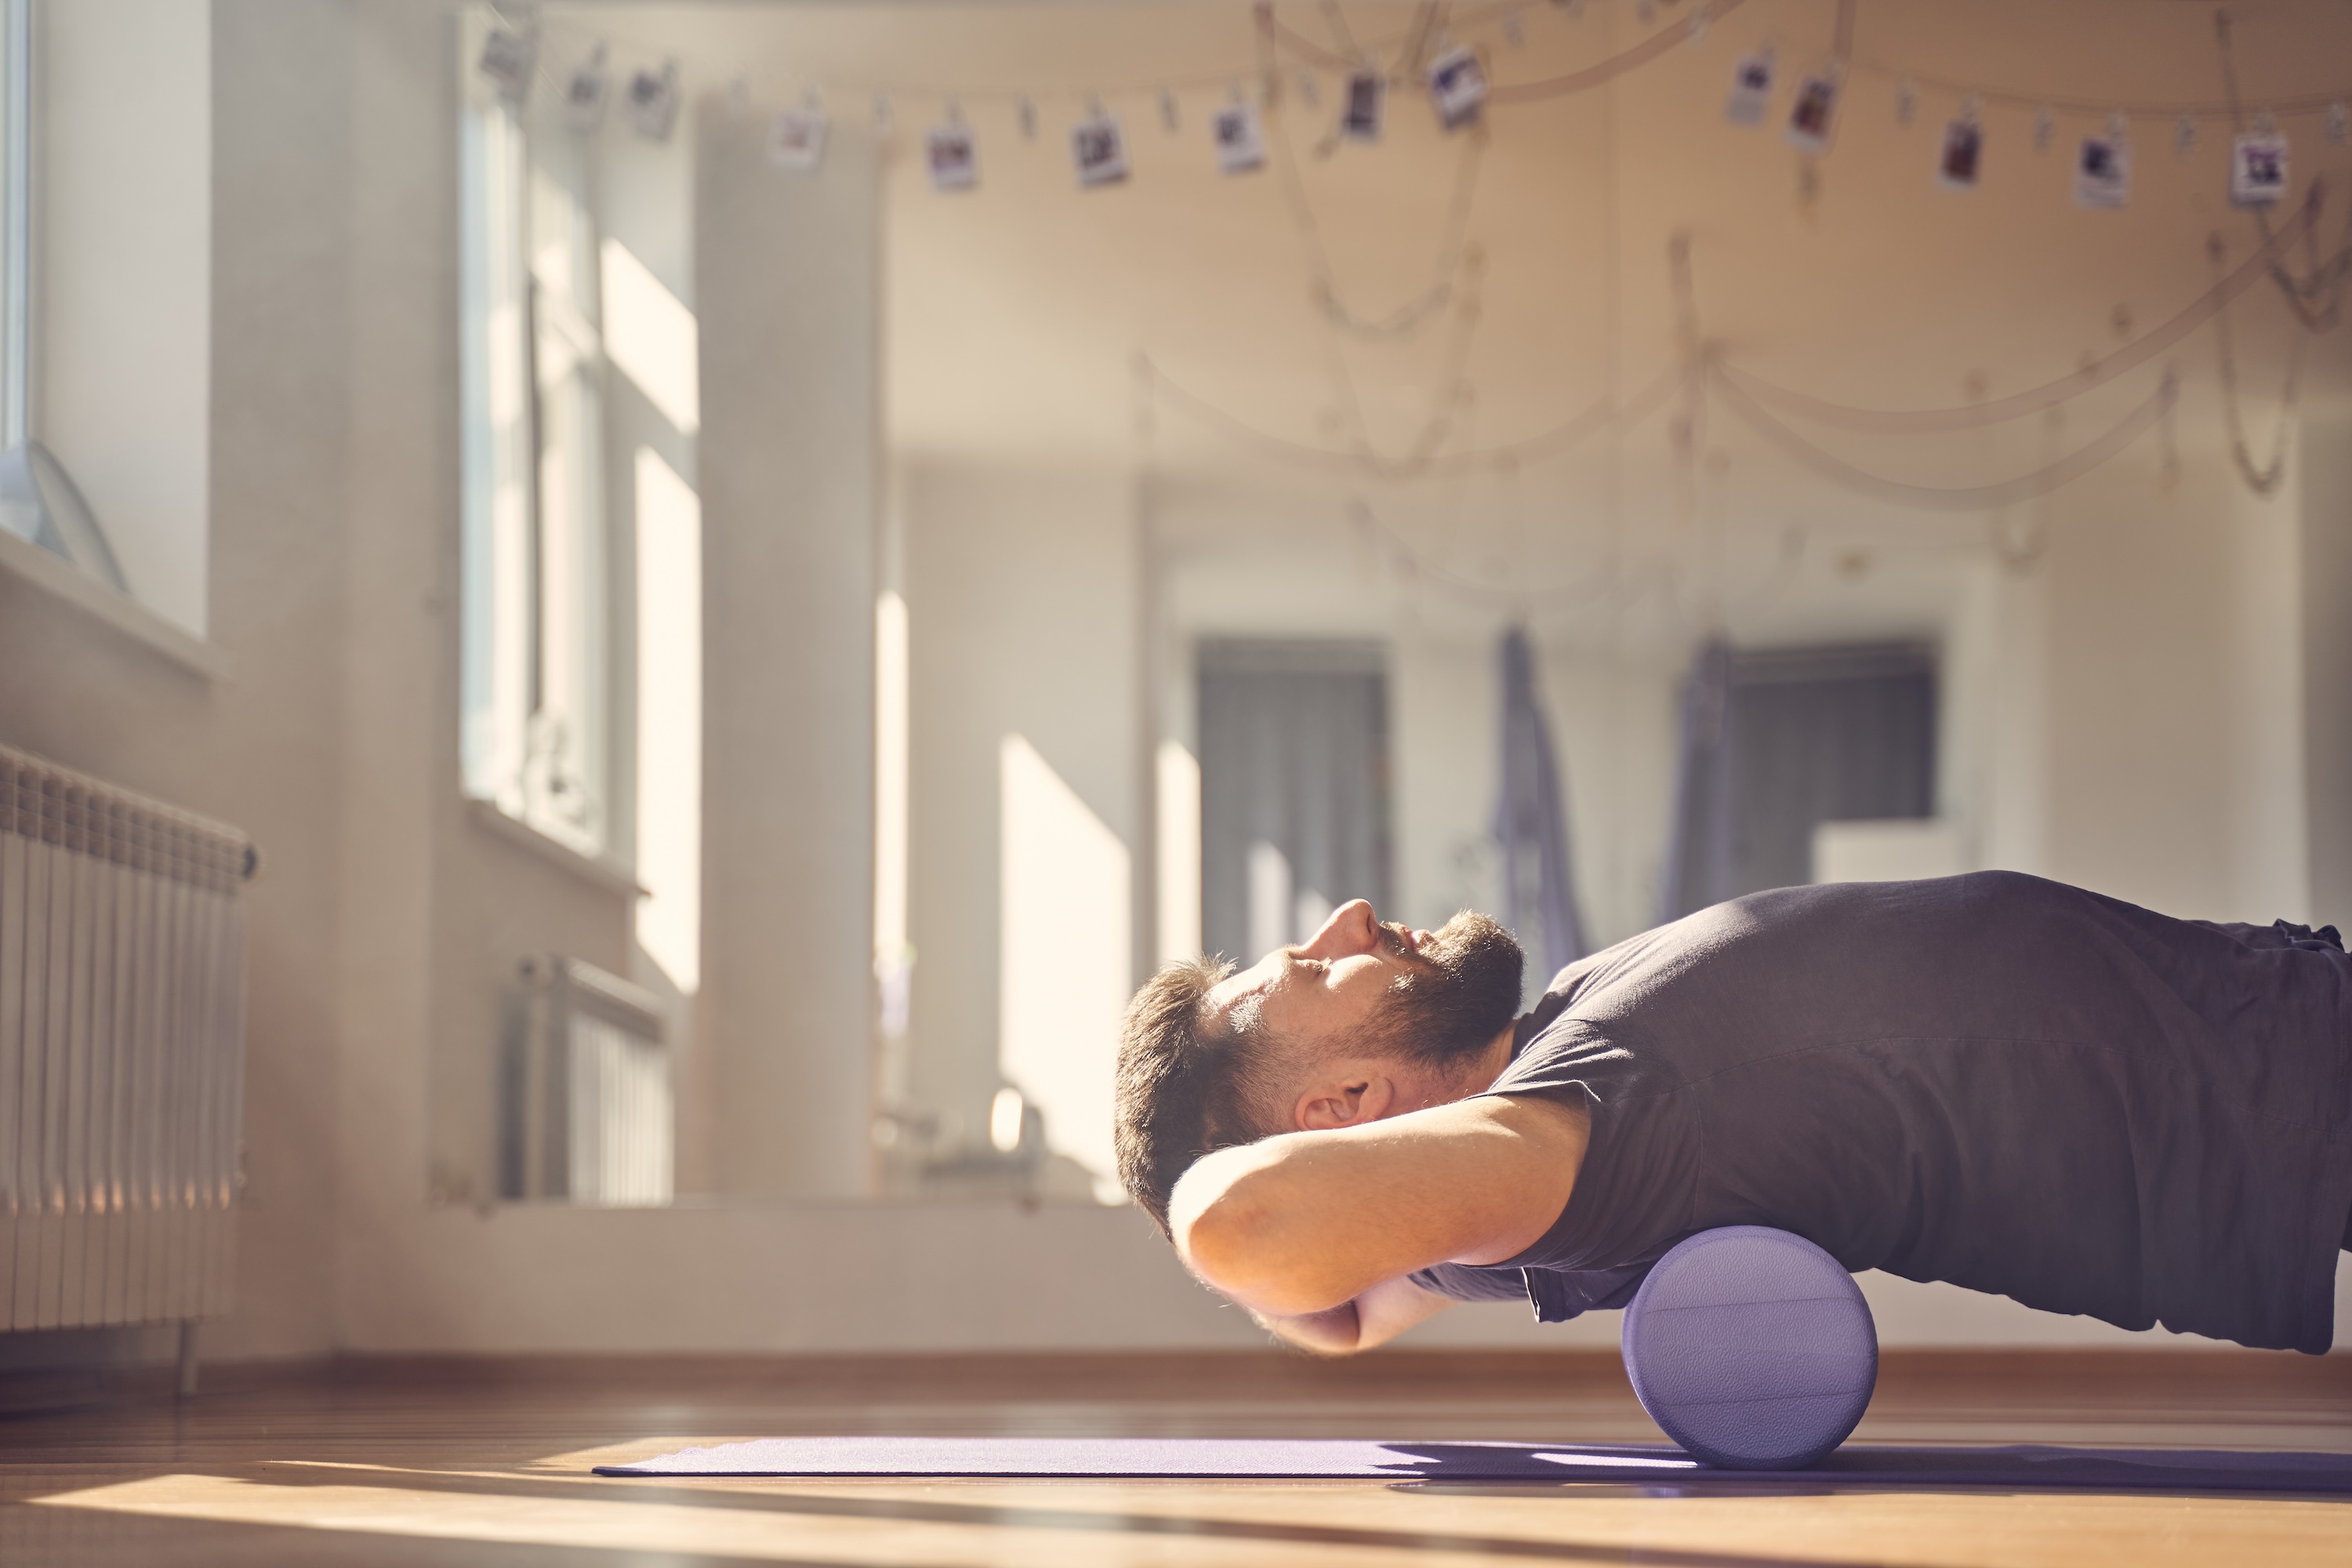 
		5 eficaces ejercicios de espalda con foam roller que tu cuerpo te agradecerá